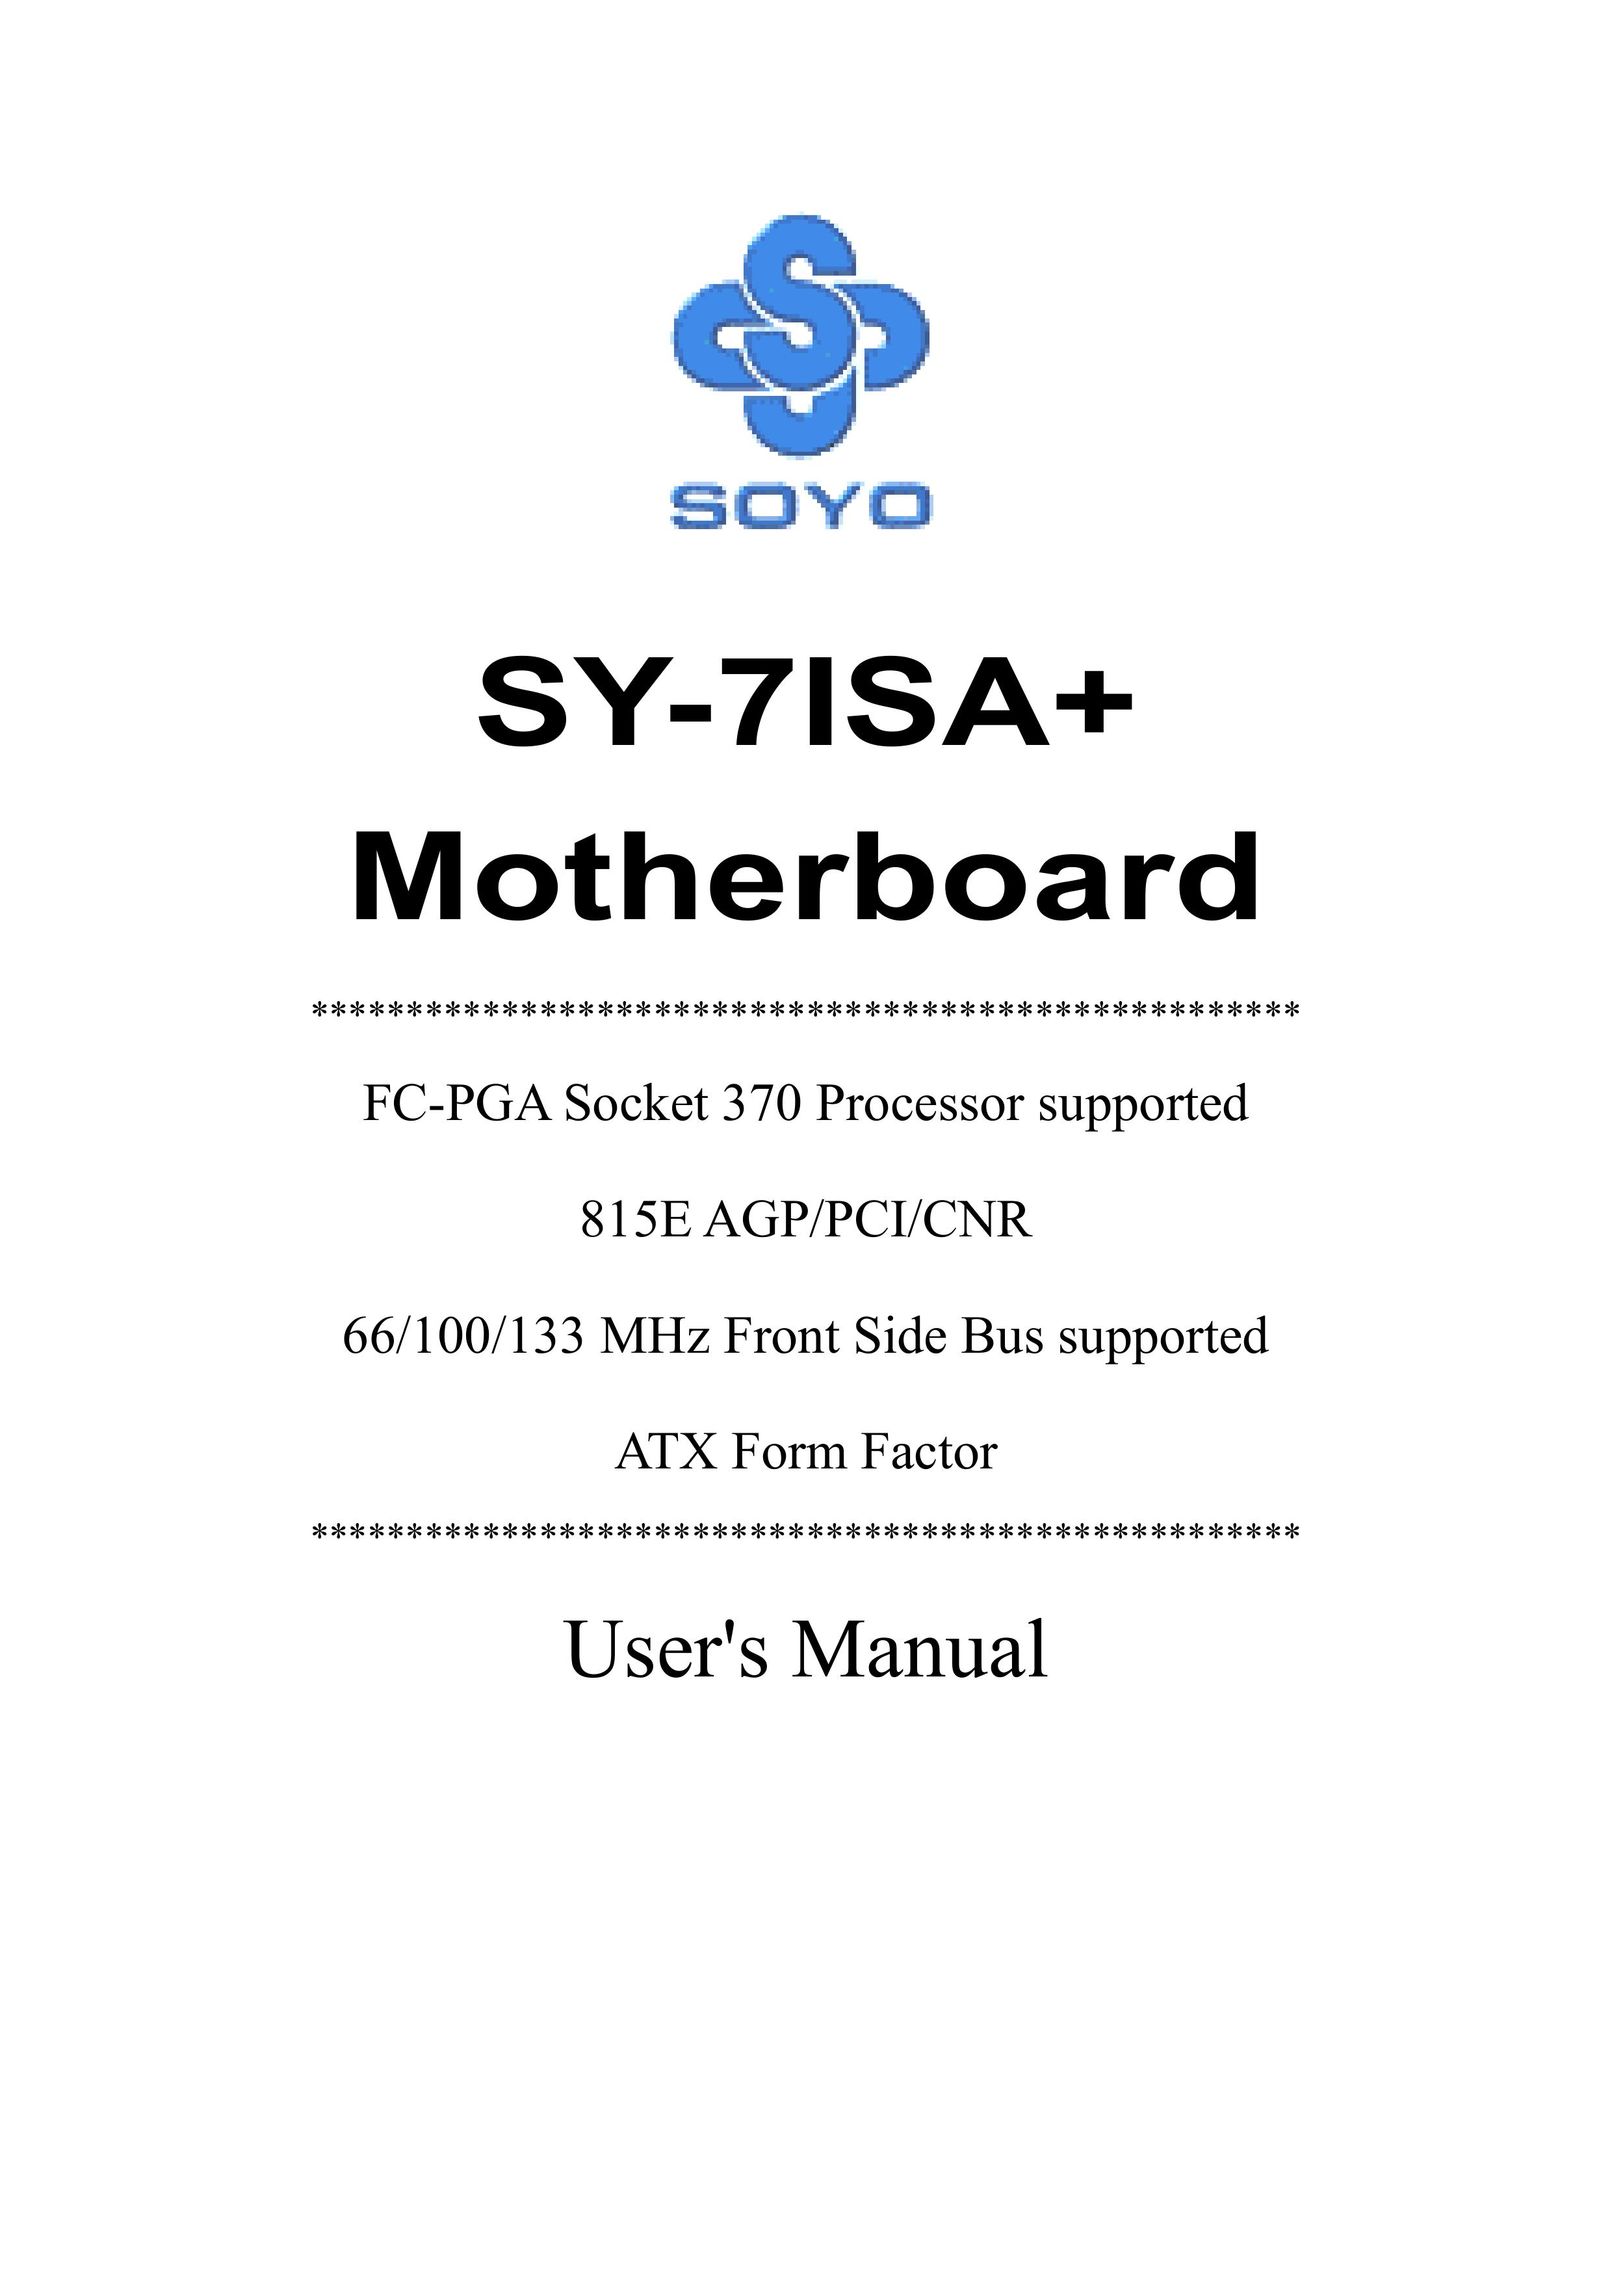 SOYO sy-7isa+ Computer Hardware User Manual